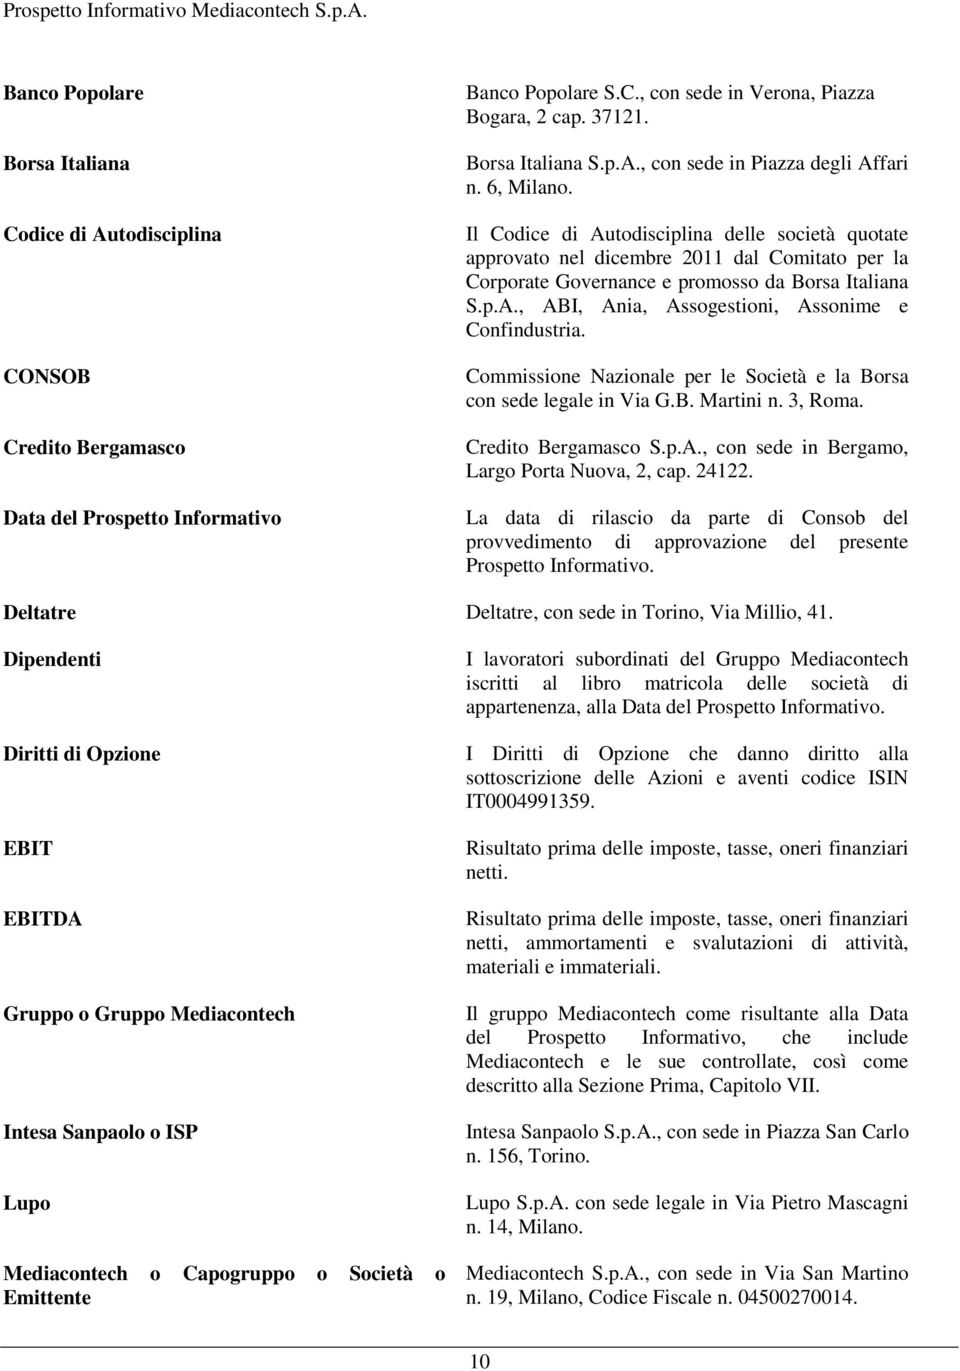 Il Codice di Autodisciplina delle società quotate approvato nel dicembre 2011 dal Comitato per la Corporate Governance e promosso da Borsa Italiana S.p.A., ABI, Ania, Assogestioni, Assonime e Confindustria.